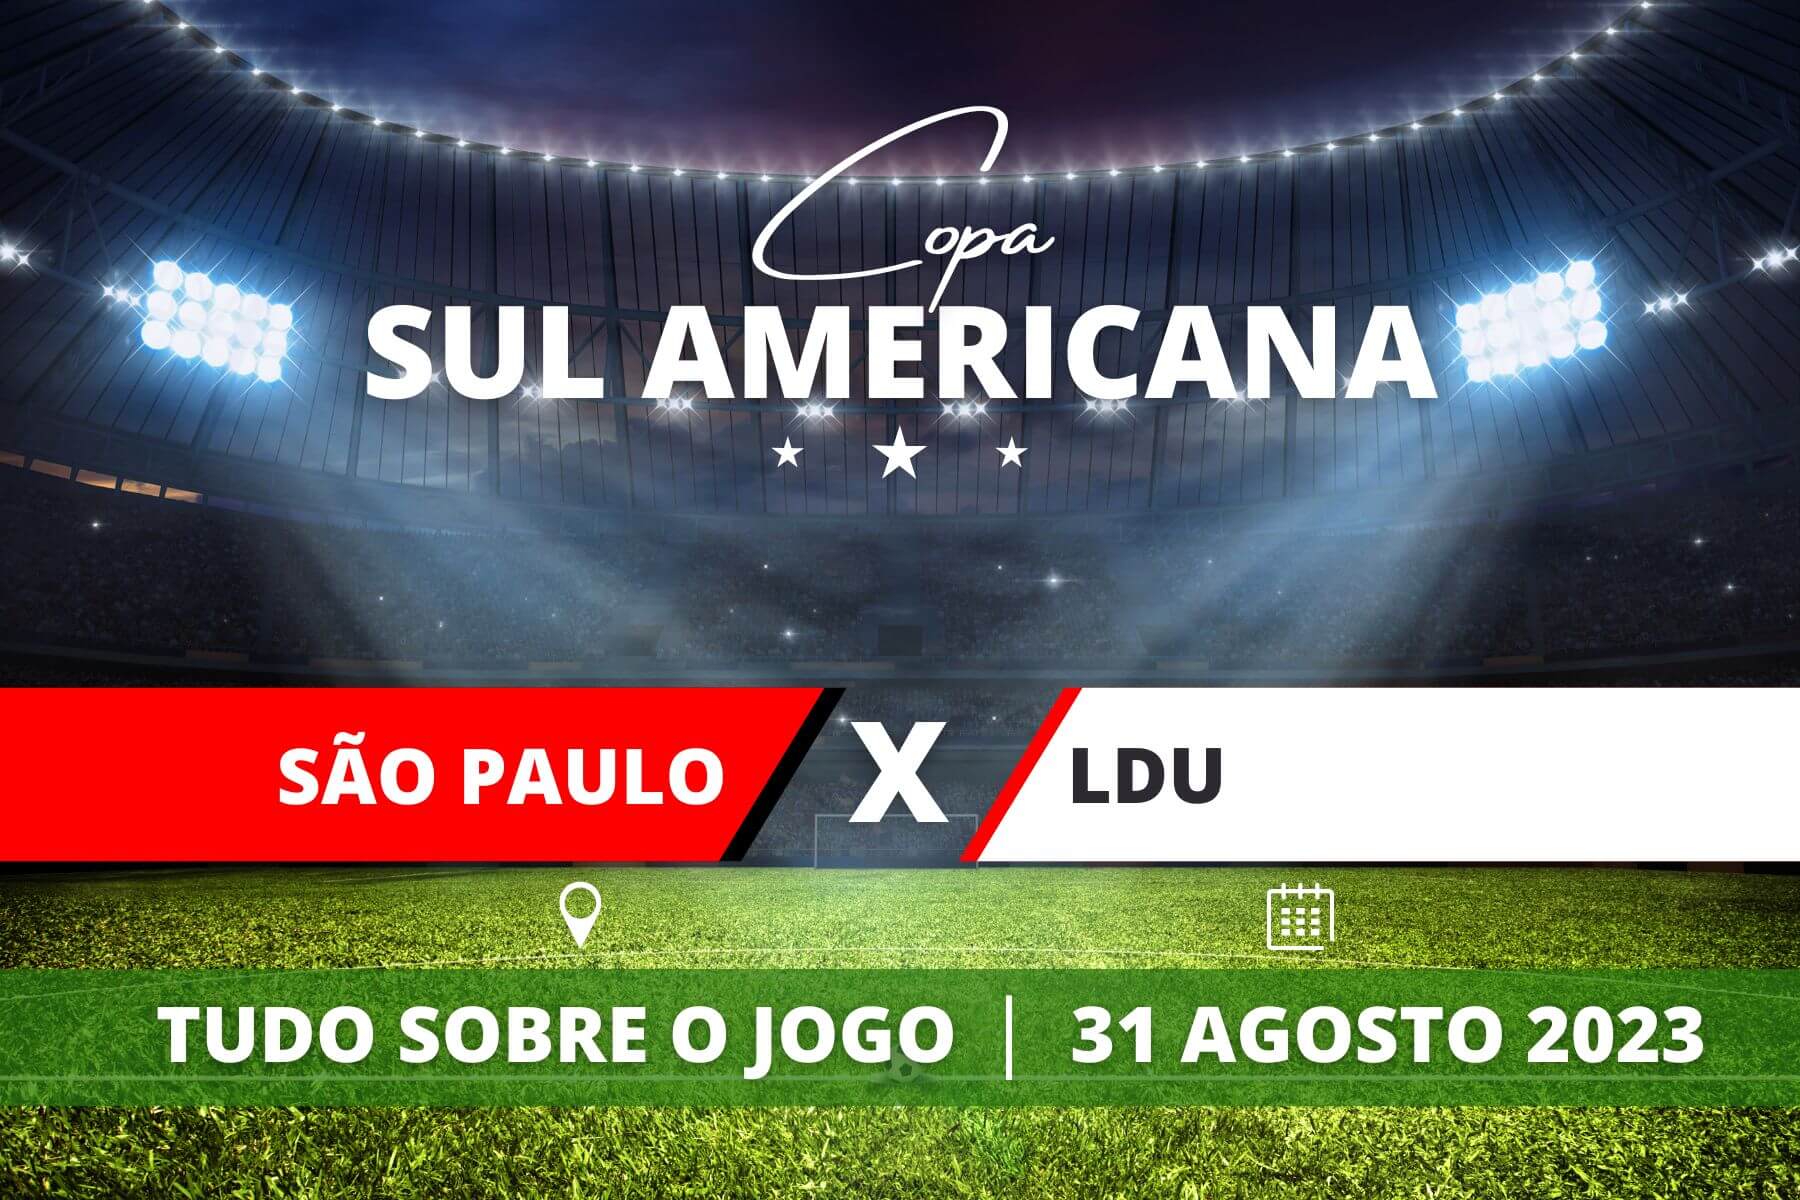  Portal Brasil São Paulo x LDU pela Copa Sul Americana. Saiba tudo sobre o jogo - escalações prováveis, onde assistir, horário e venda de ingressos 